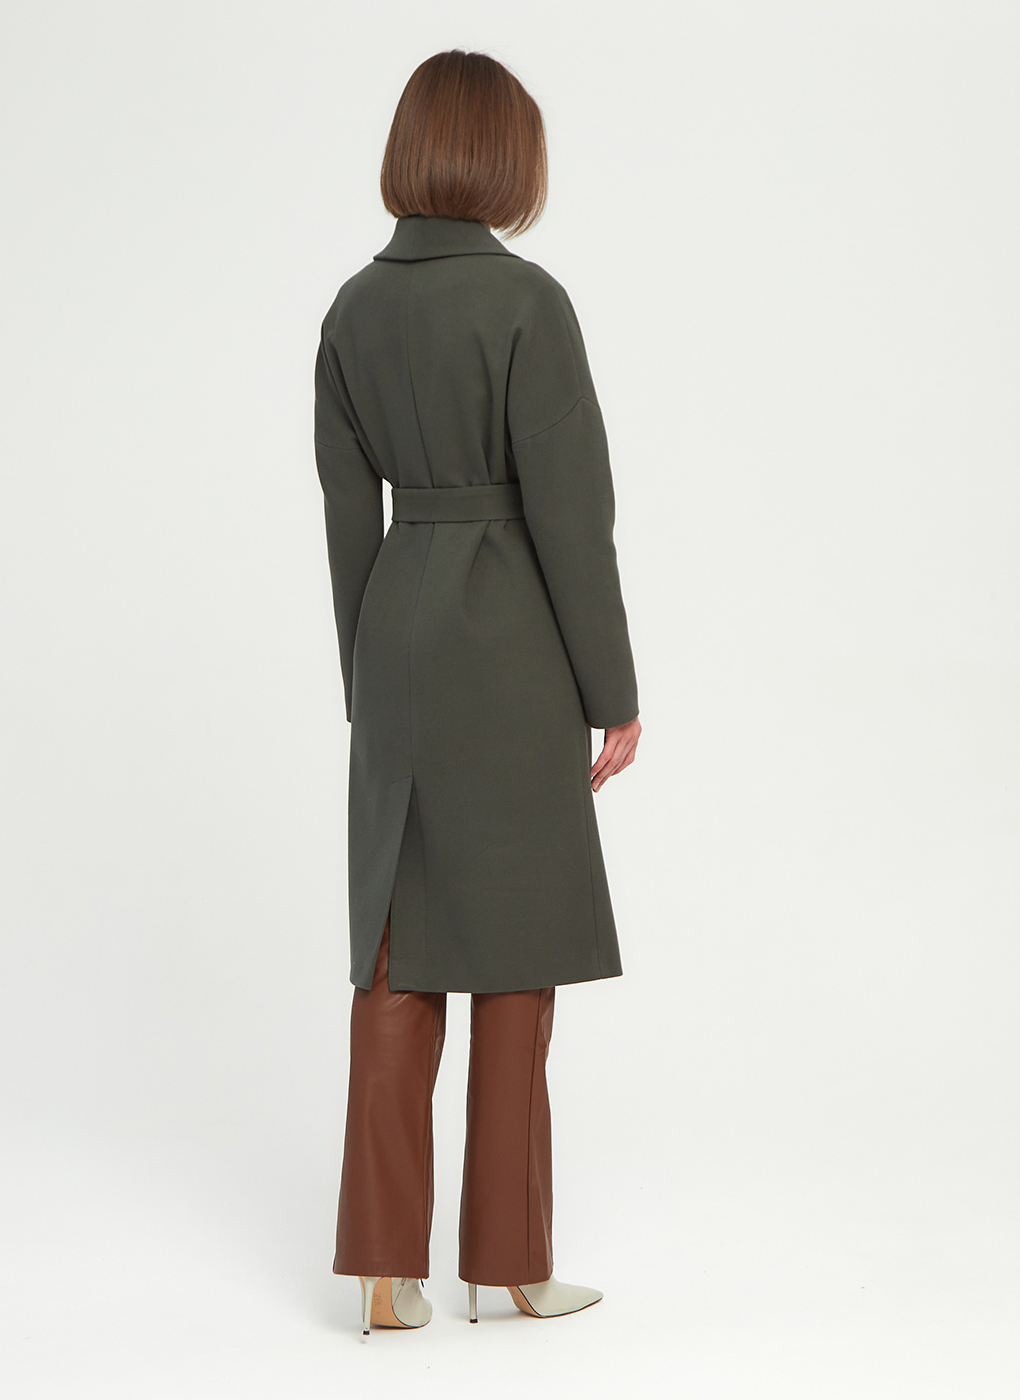 Пальто женское Giulia Rosetti 56204 зеленое 42 RU